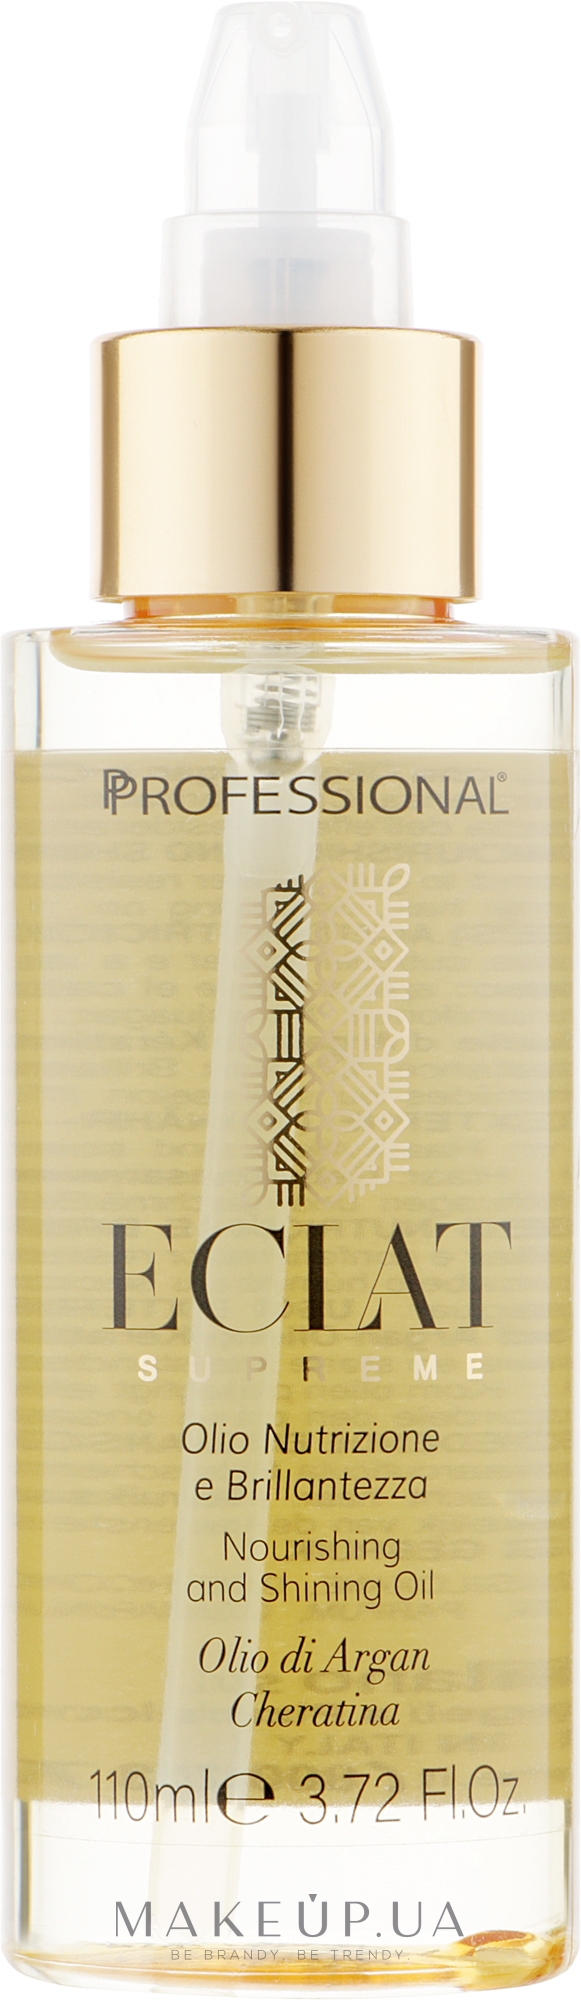 Масло питательное для волос - Professional Eclat Supreme — фото 110ml